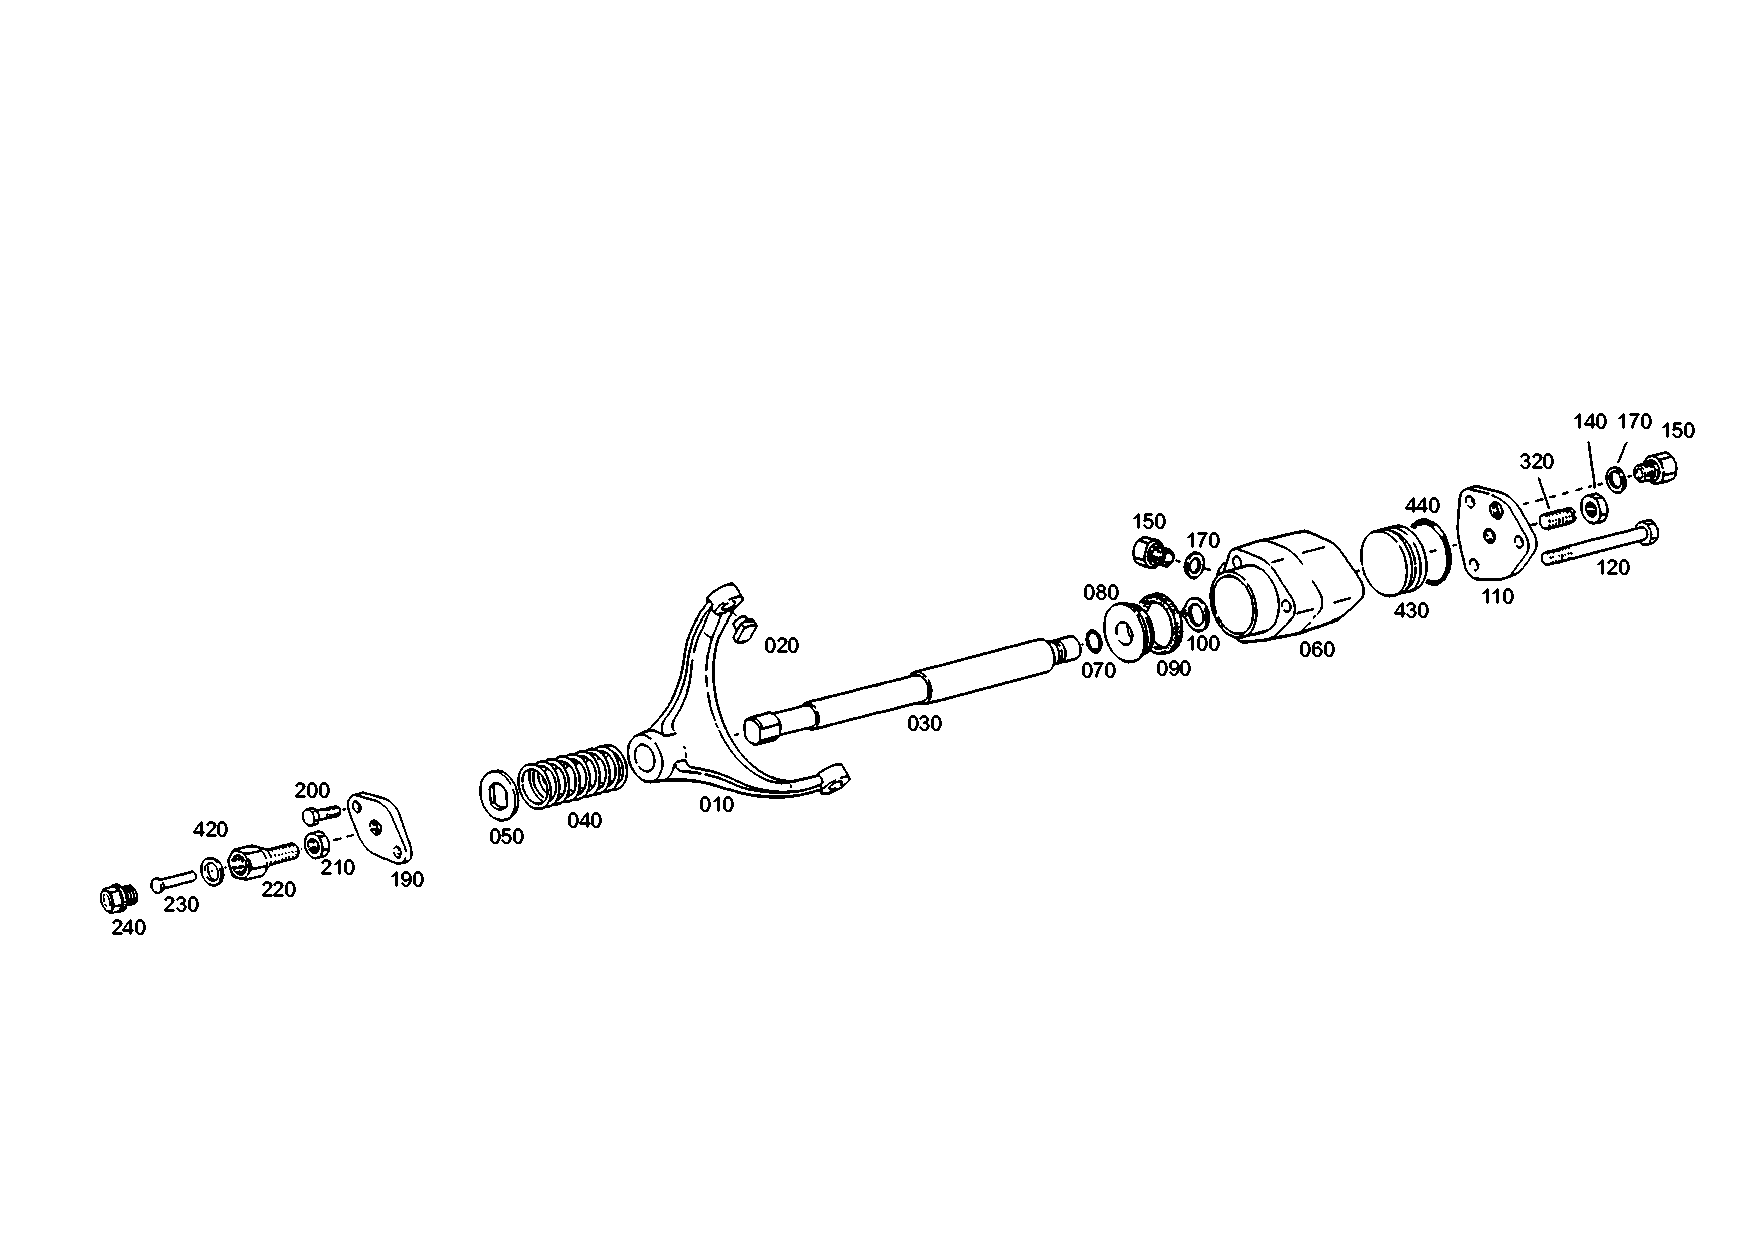 drawing for XUZHOU 171600240025 - GEAR SHIFT FORK (figure 5)